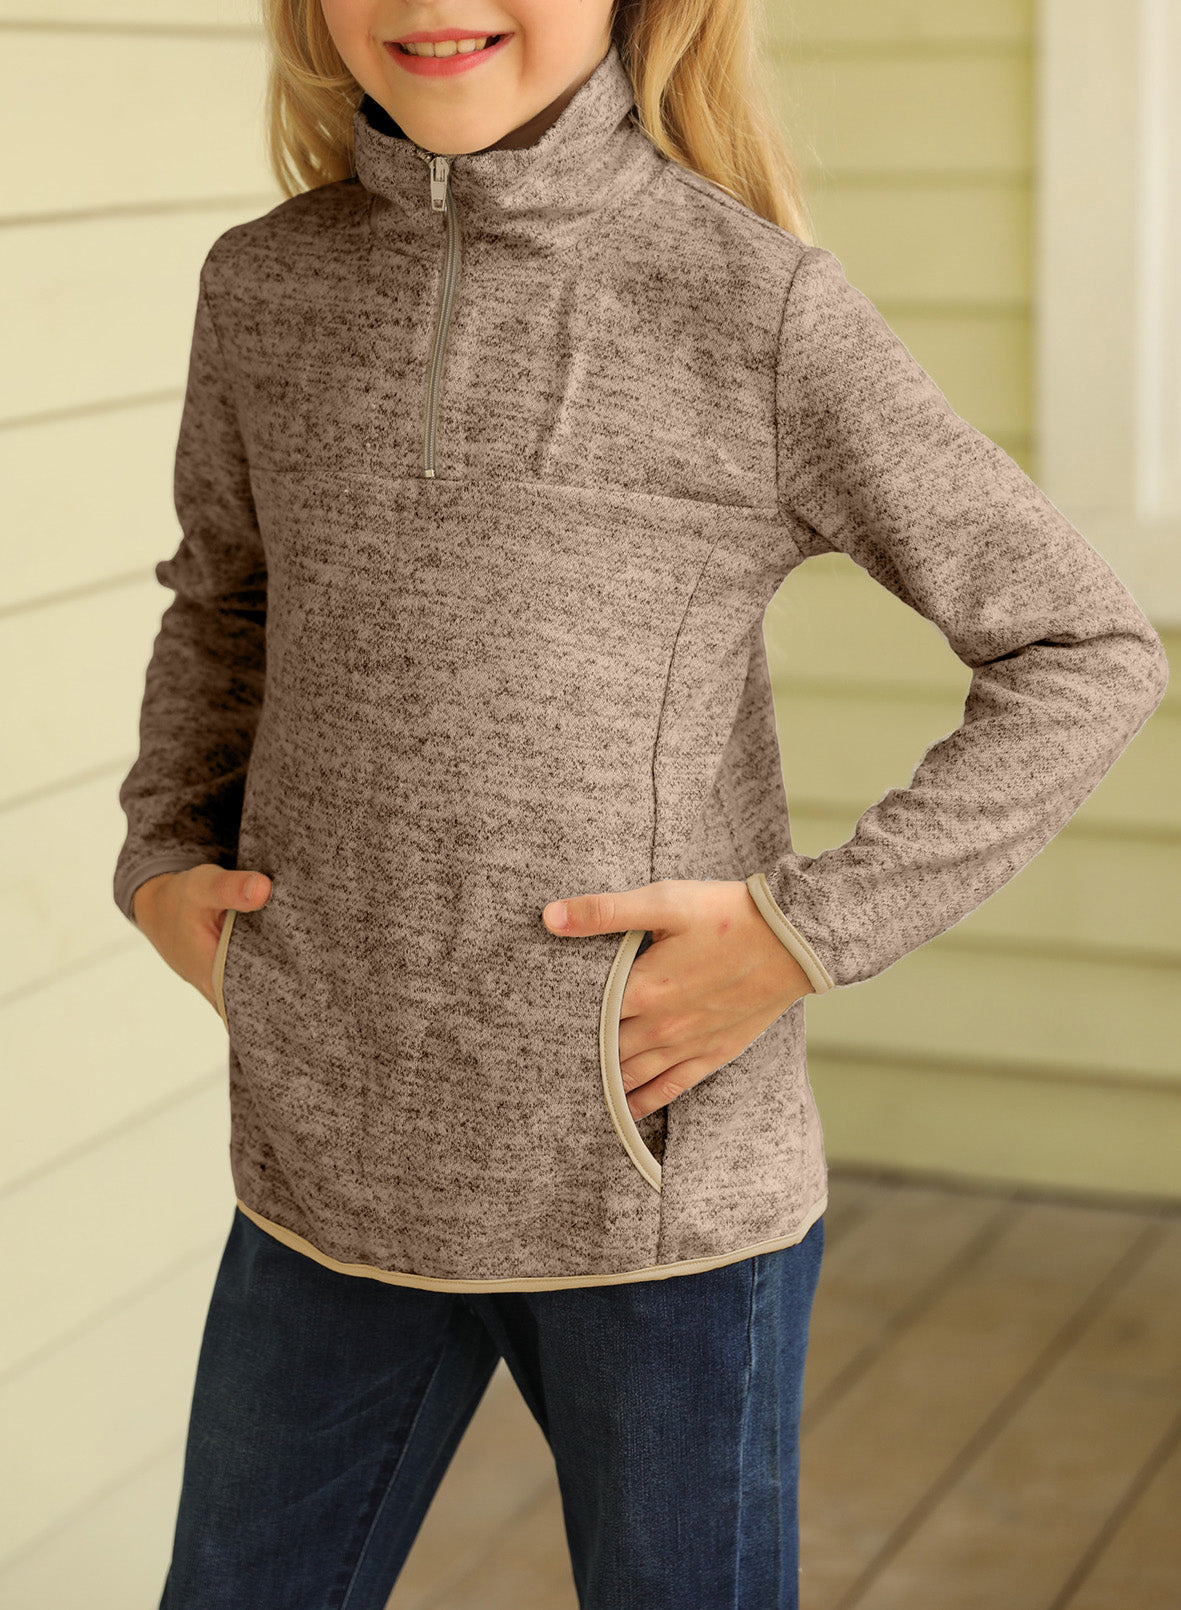 Kids Quarter-Zip Collar Sweatshirt with Kangaroo Pocket - DromedarShop.com Online Boutique